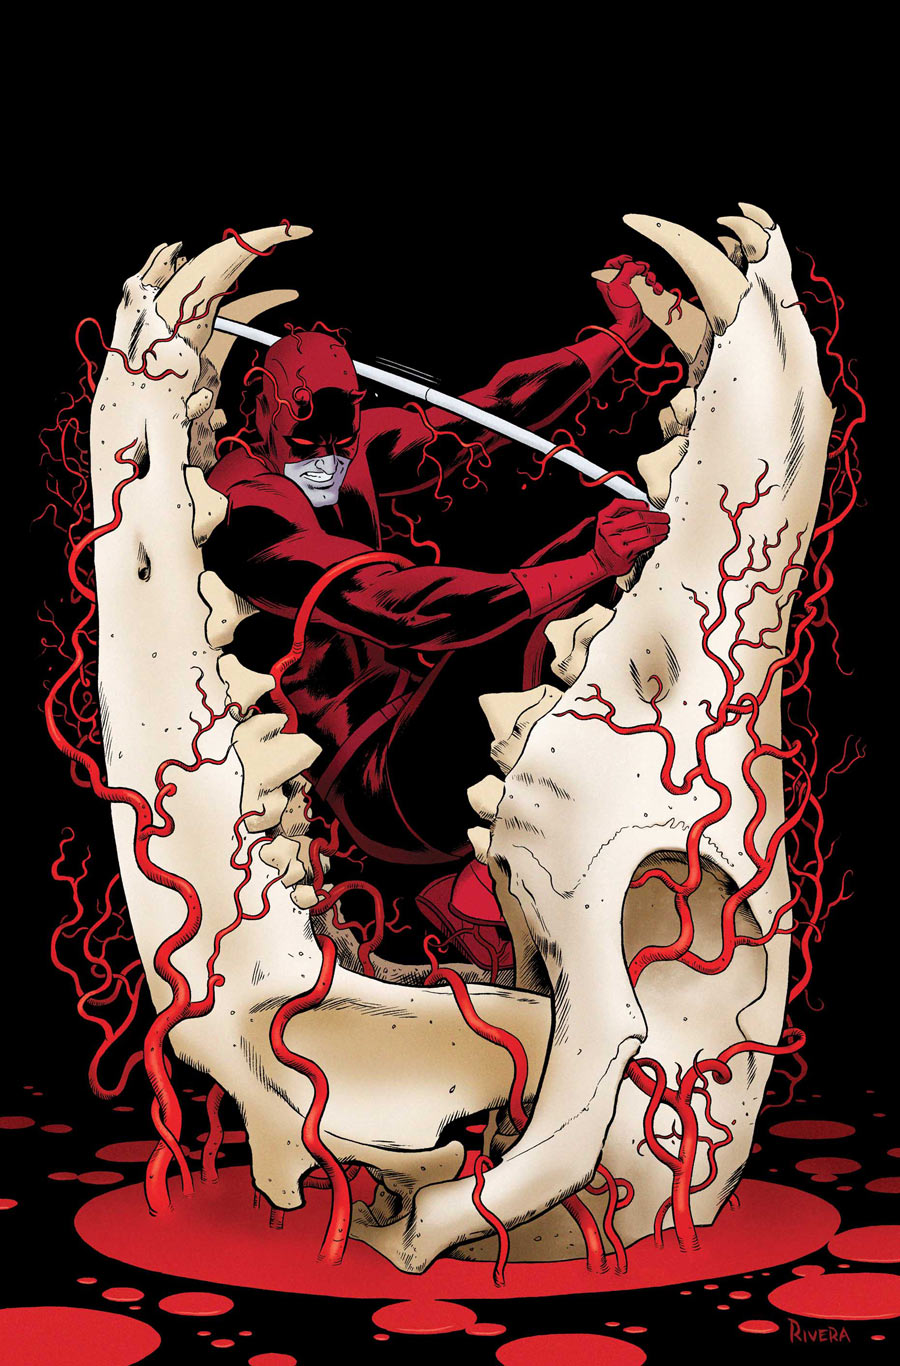 Daredevil #21 by Paolo Rivera